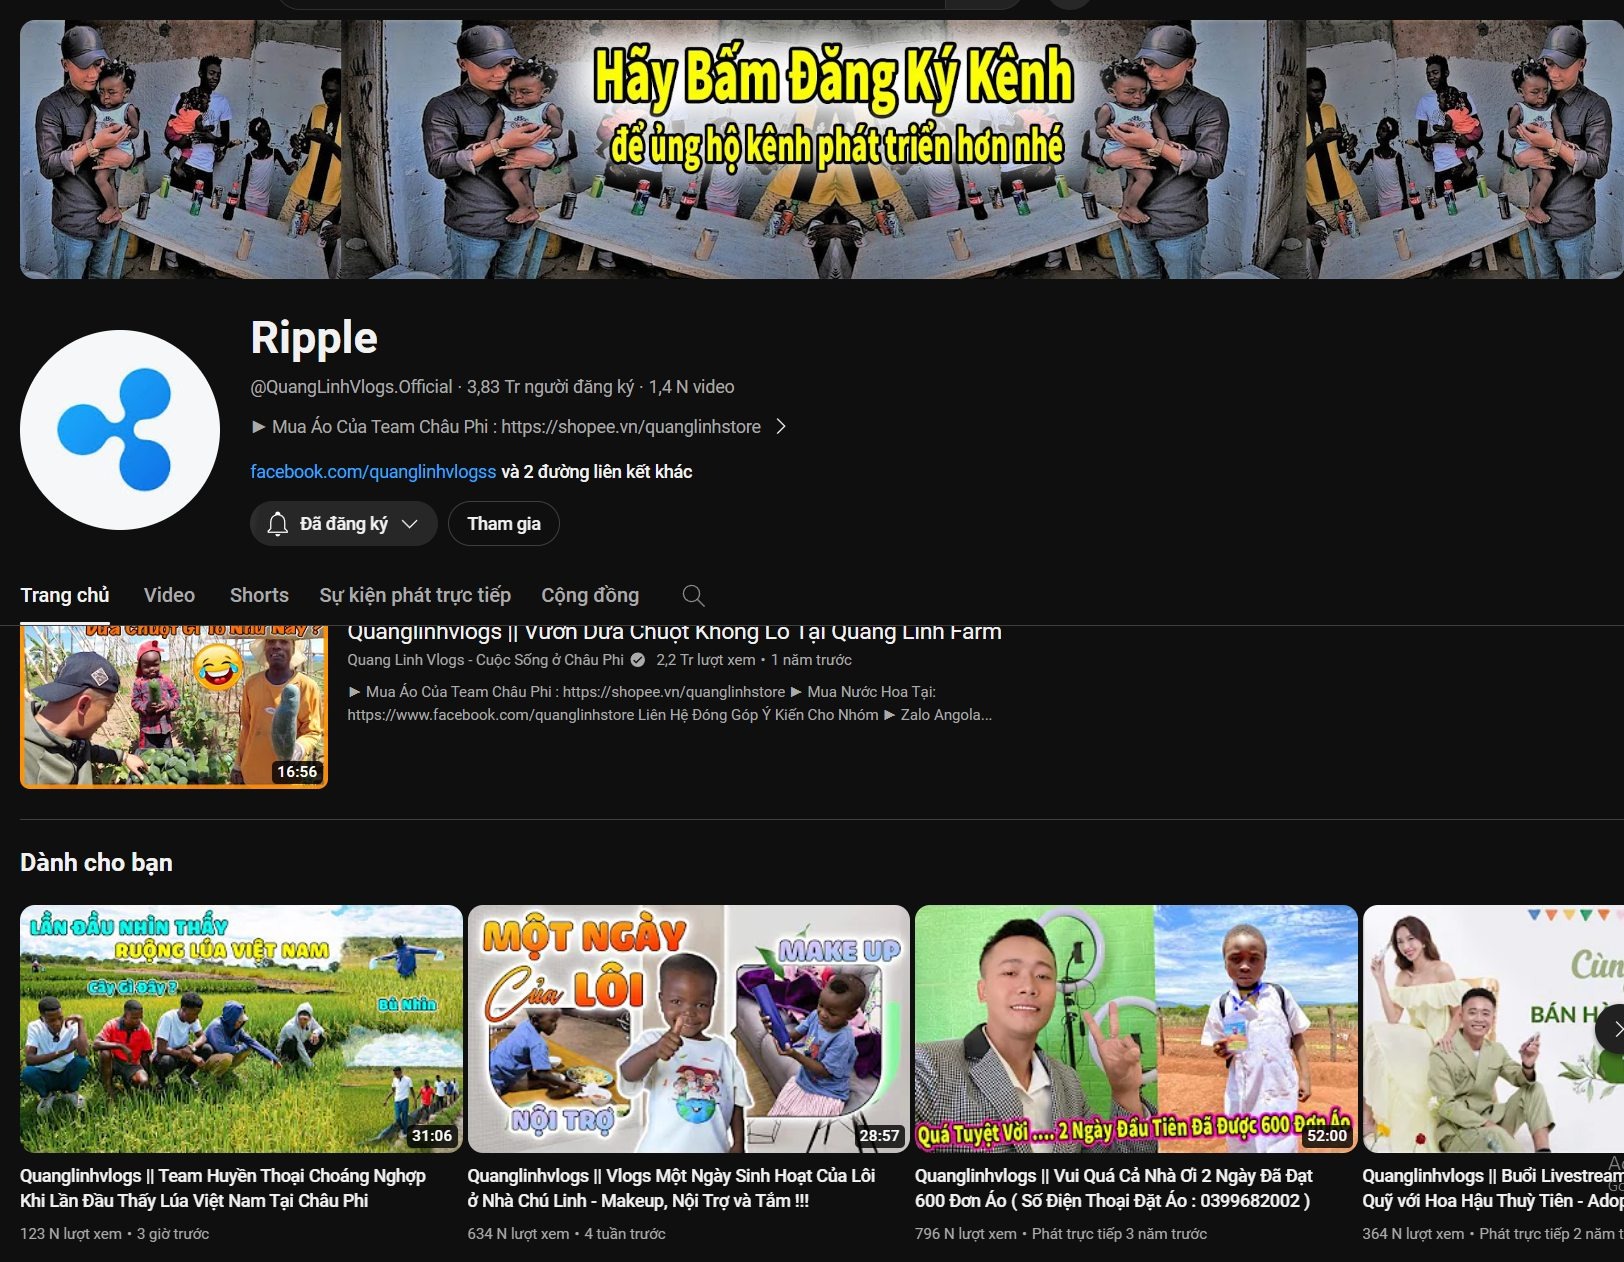 Kênh Youtube gần 4 triệu đăng kỳ của Quang Linh bị hack, đổi tên thành 'Ripple'